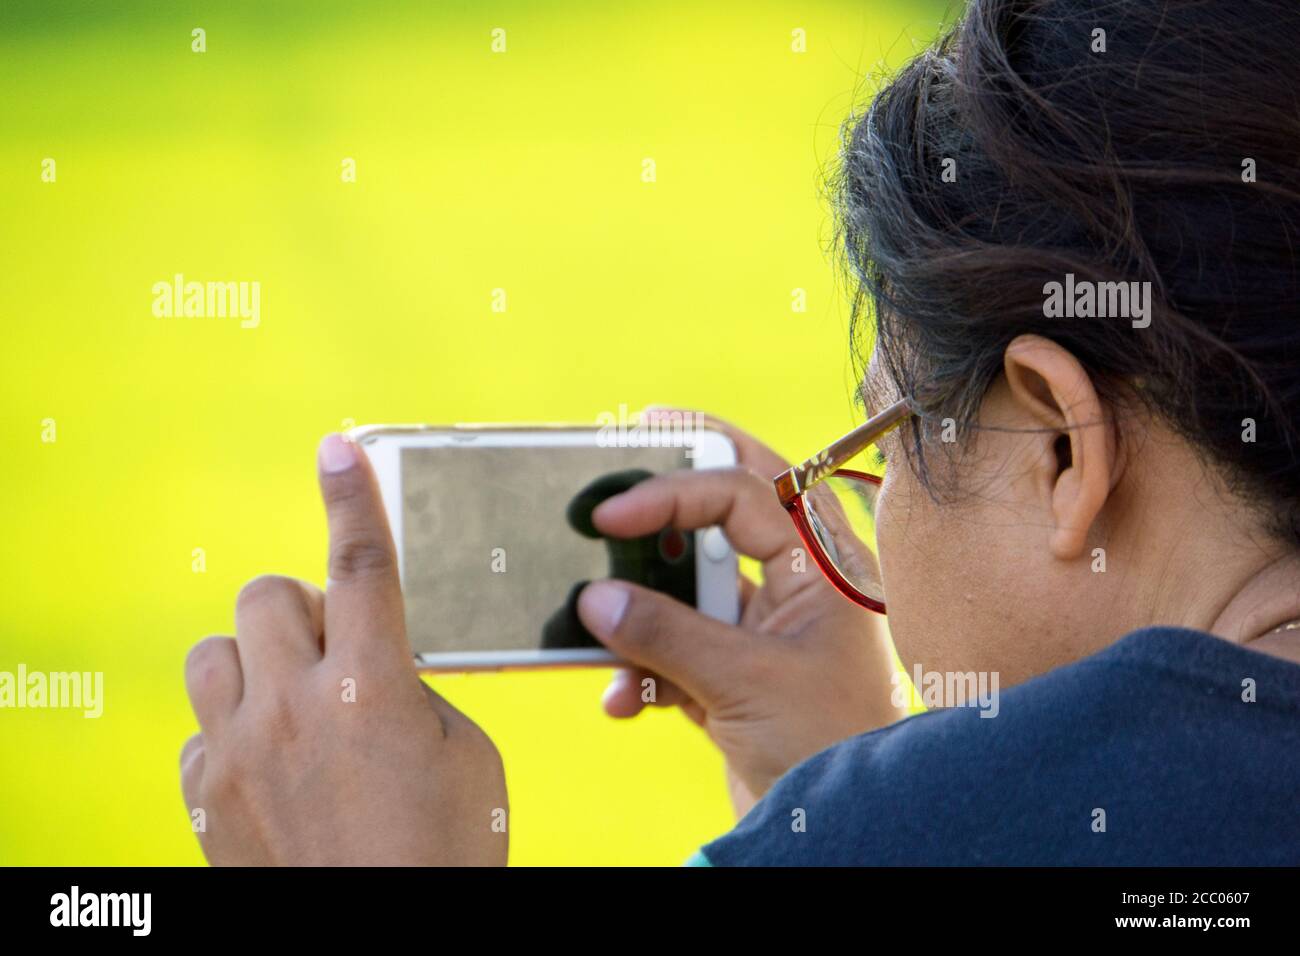 Junge Frau fotografieren mit iPhone im Freien mit einem grün gelben Hintergrund. Stockfoto